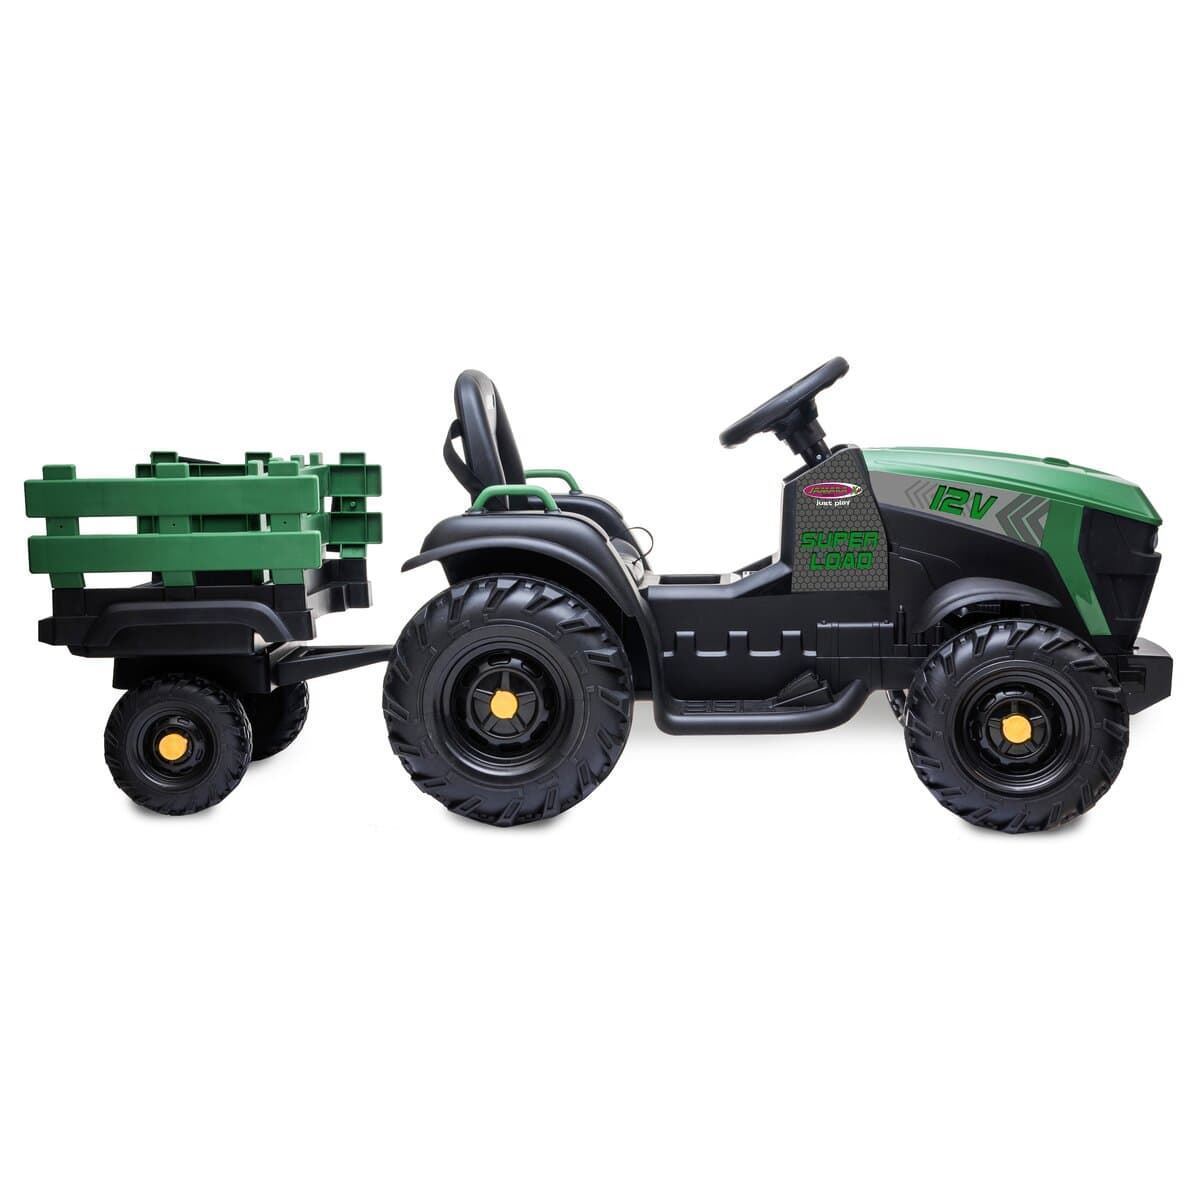 Tractor de batería 12v con remolque verde jamara 460896 - Imagen 6